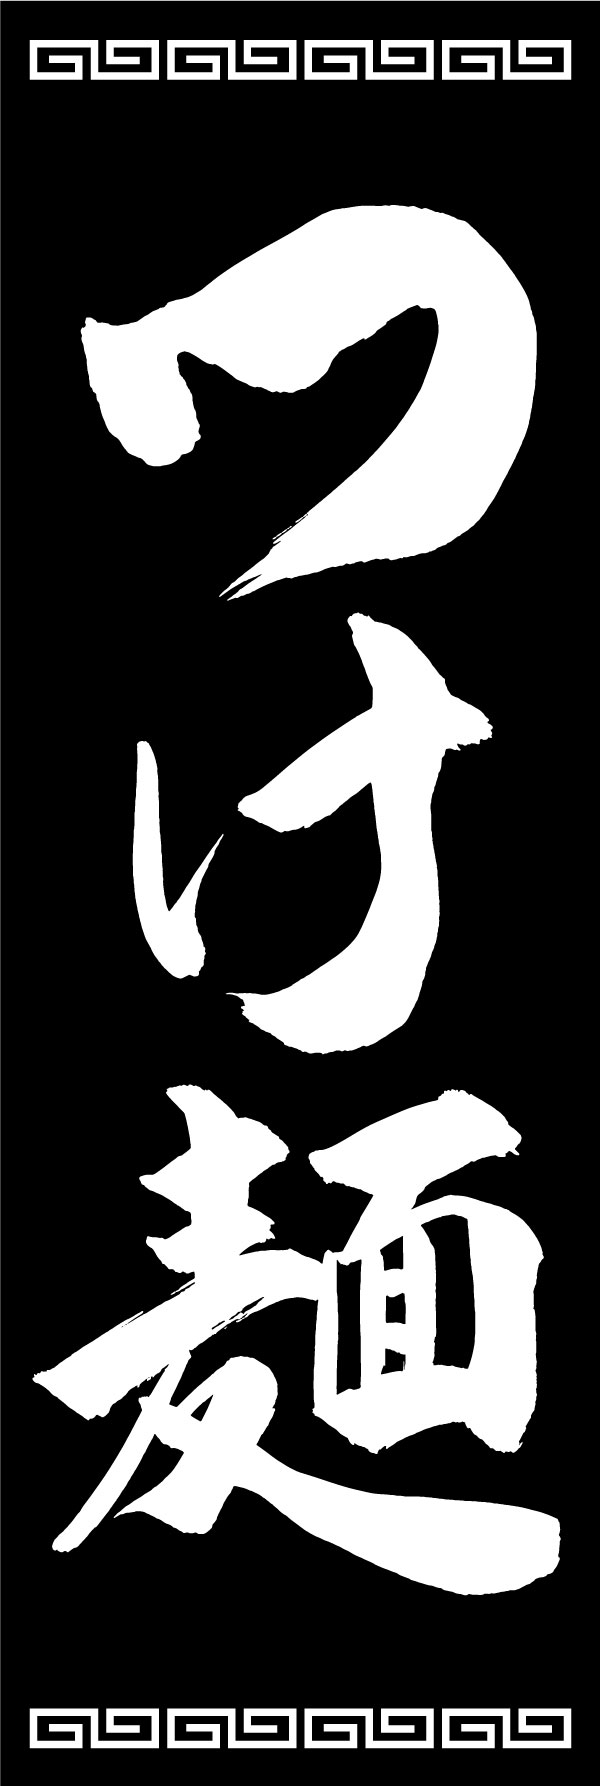 つけ麺 139_01「つけ麺」ののぼりです。江戸文字職人 加藤木大介氏による、手書きの筆文字です。完全書き下ろし、唯一無二ののぼりは当店だけのオリジナル商品です。（Y.M） 